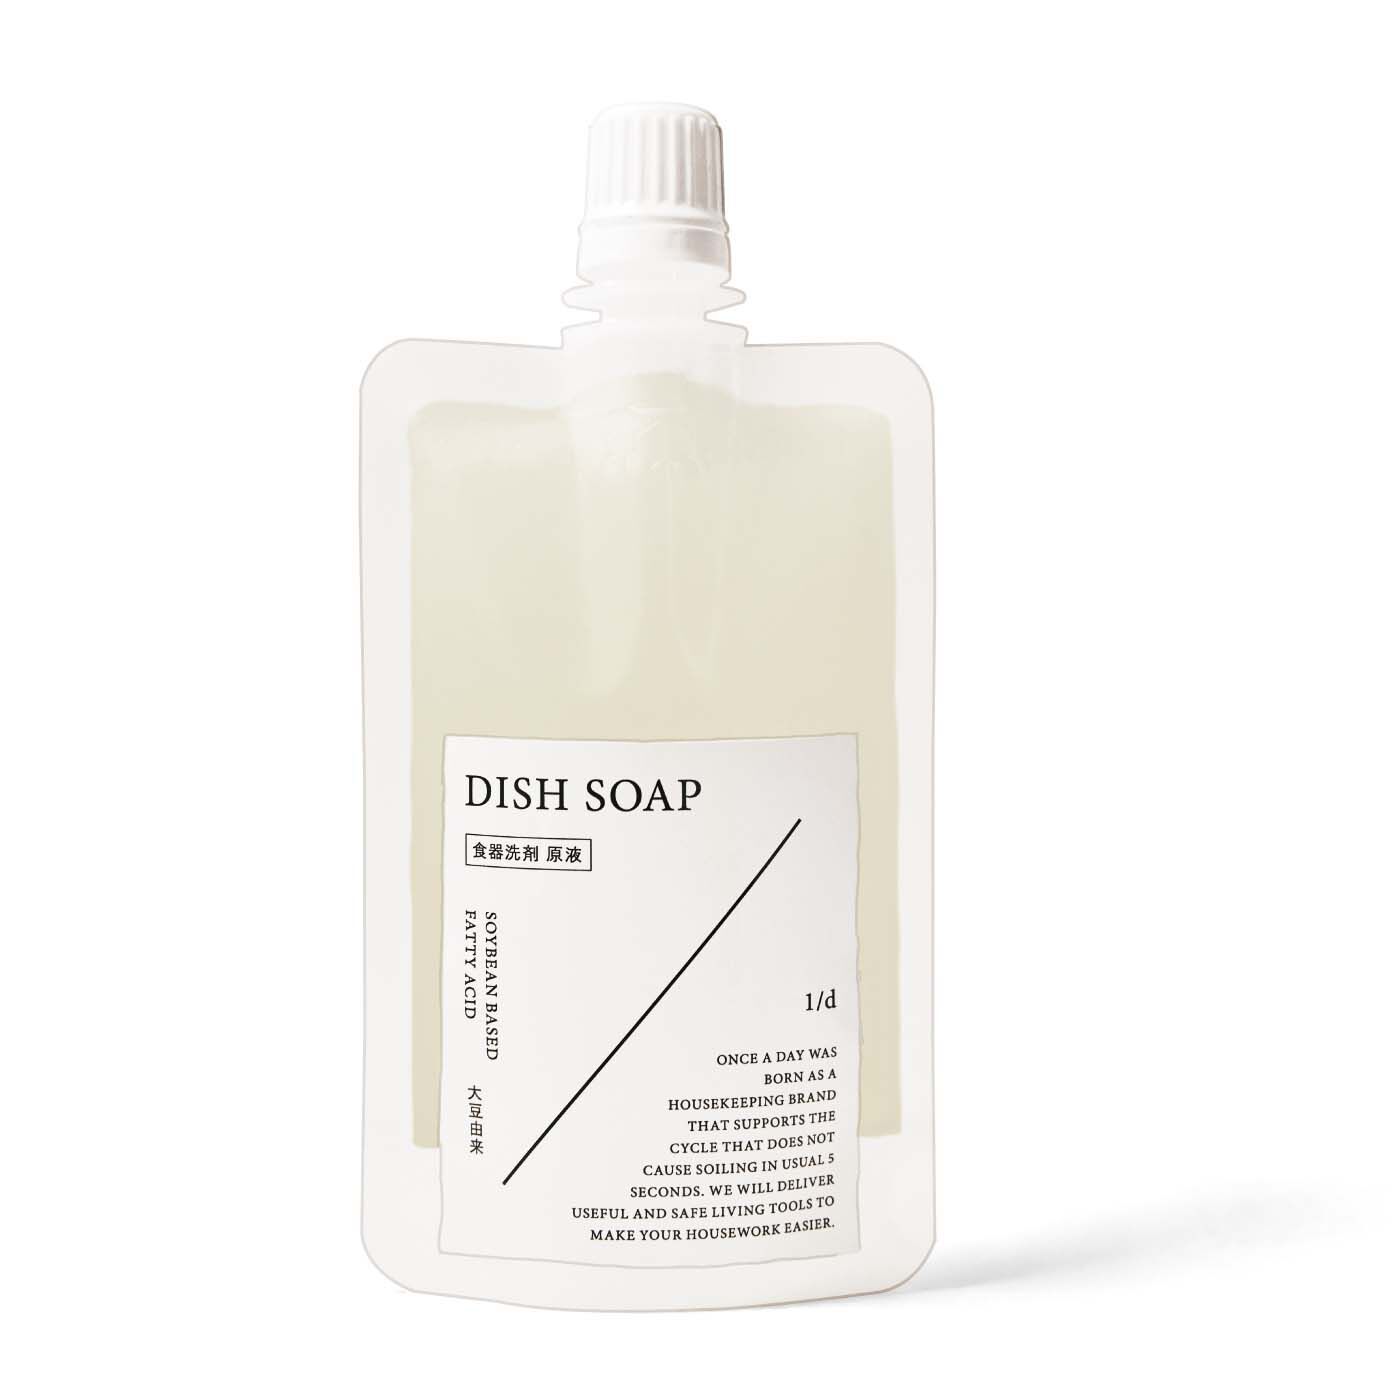 フェリシモの雑貨Kraso|1/d DISH SOAP 食器用洗剤の会|DISH SOAP洗剤原液1袋